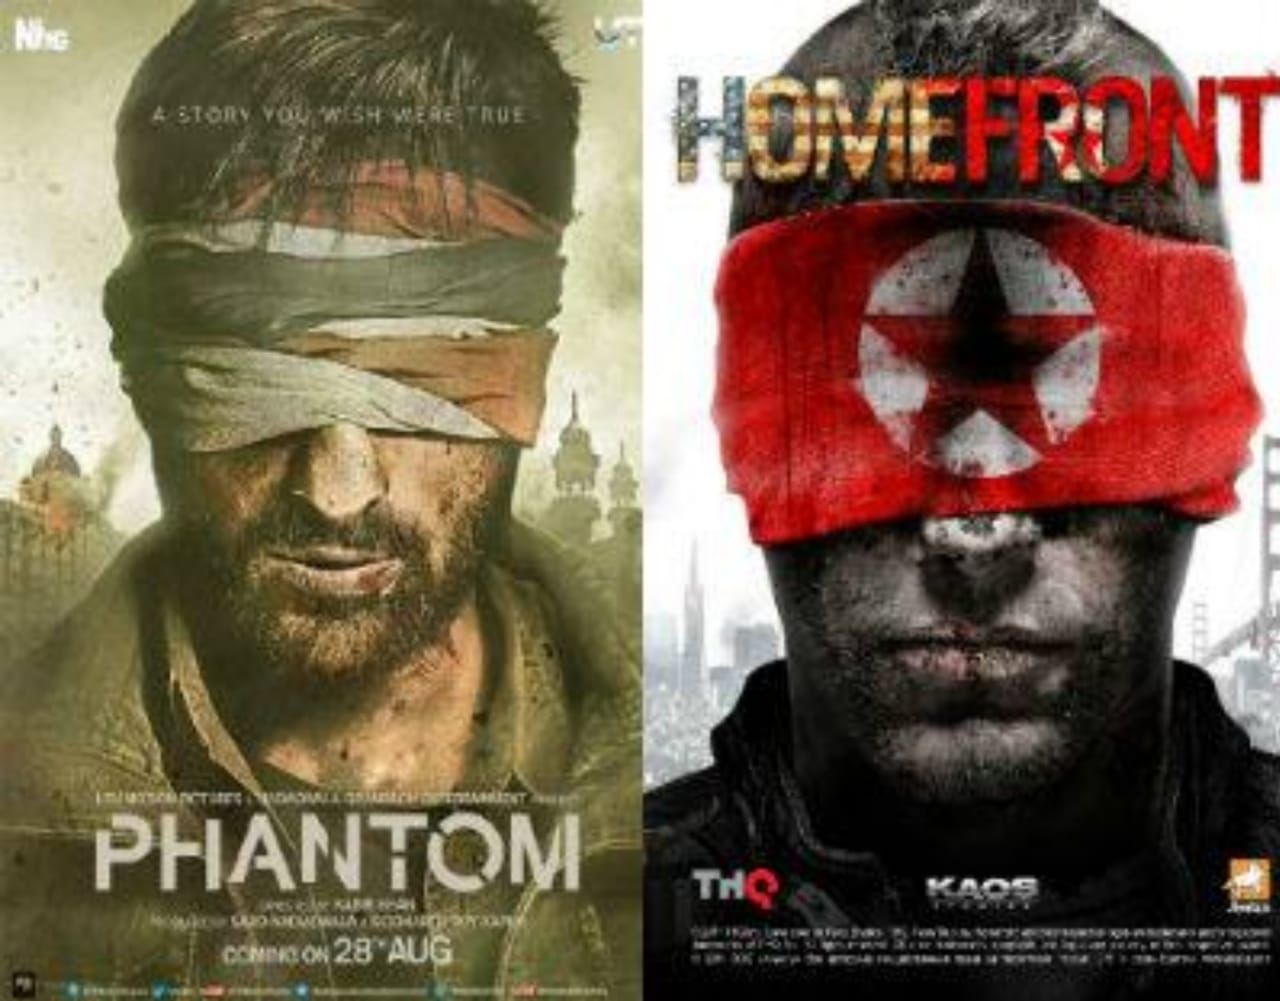 २०१५मध्ये प्रदर्शित झालेला 'फॅन्टम' आणि २०११ मध्ये प्रदर्शित झालेला 'video game Homefront' चित्रपटाच्या पोस्टरमध्ये साम्य आहे.